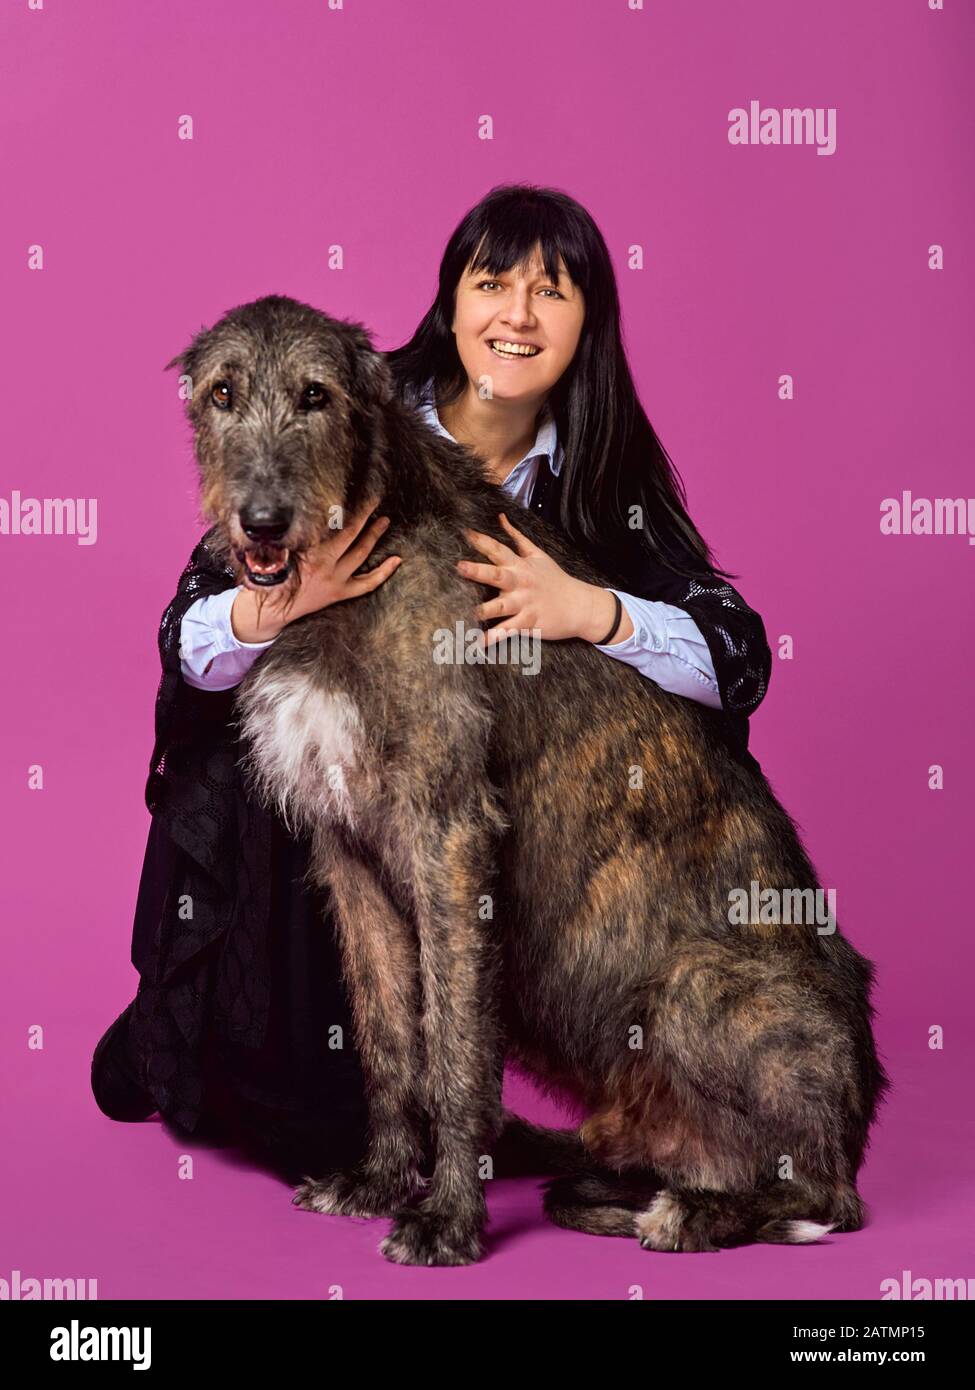 Femme souriante et joyeuse brunette avec Wolfhounds irlandais gris sur fond de couleur fuchsia en studio photo. Concept d'amitié, d'amour, d'animaux de compagnie. Banque D'Images